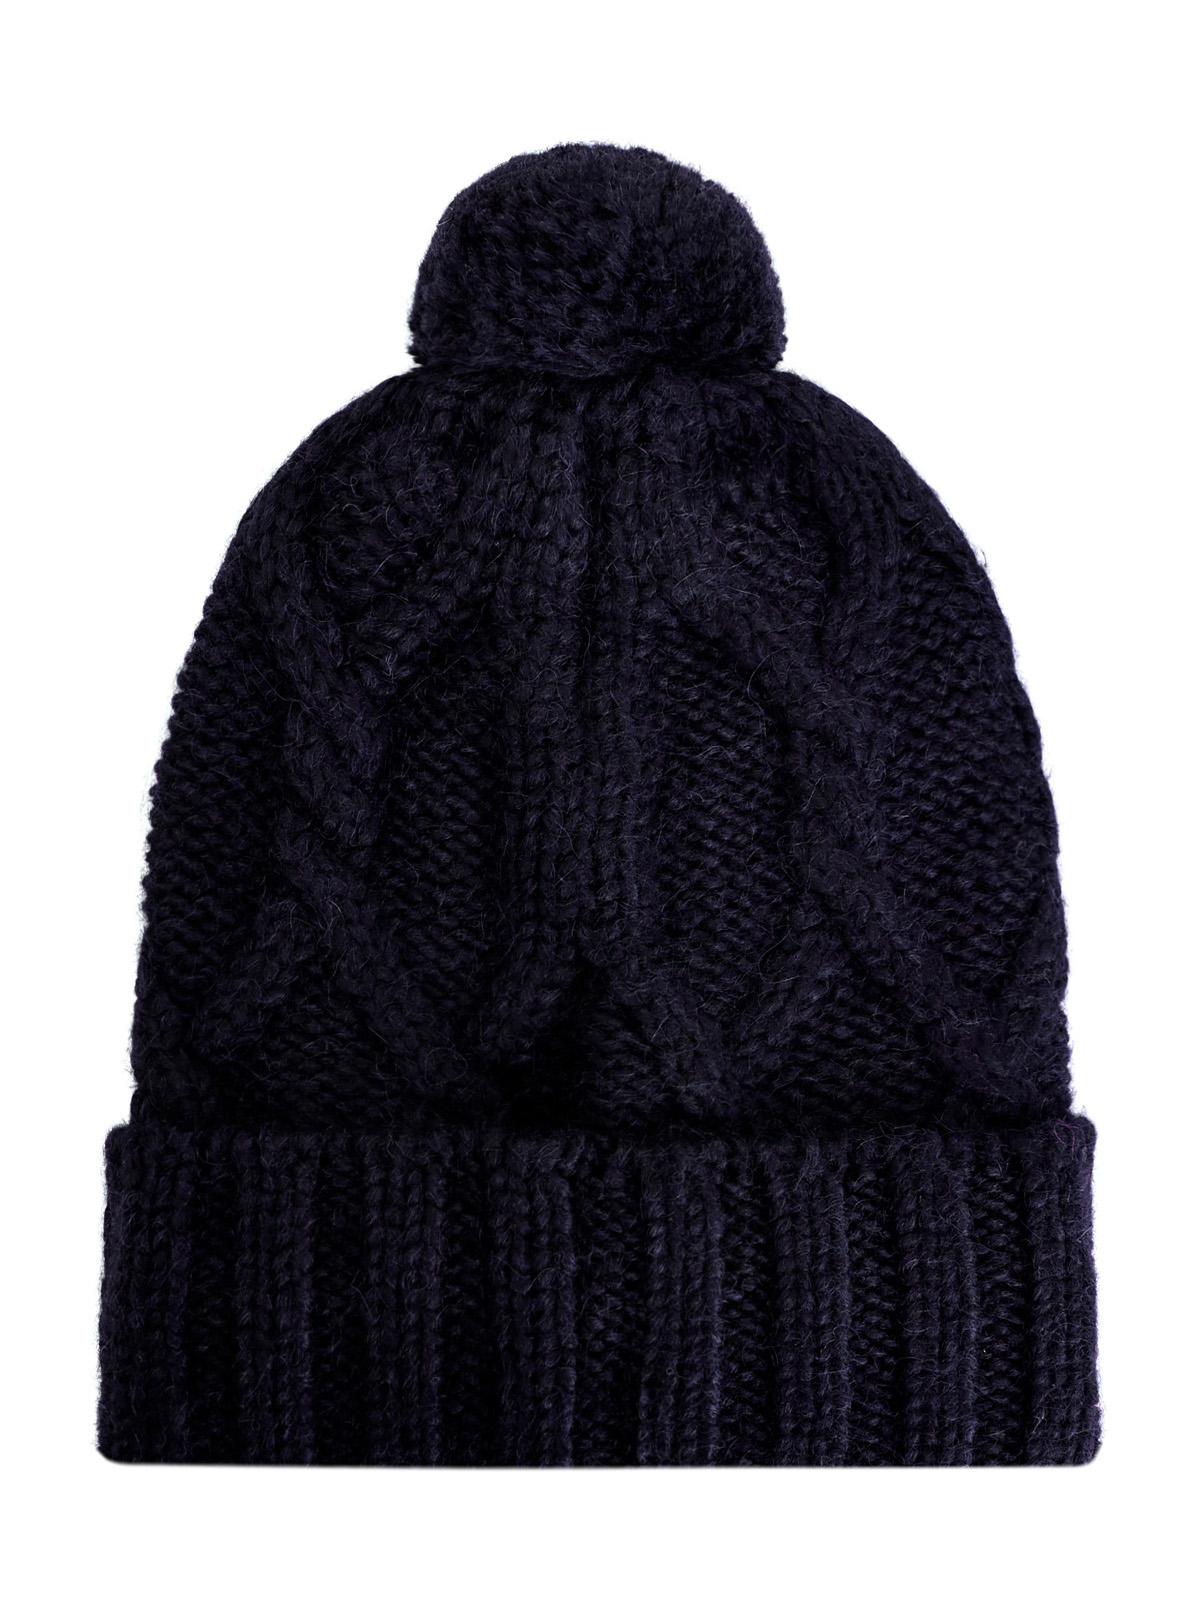 Теплая шапка узорной вязки из альпаки и шерсти MONCLER, цвет черный, размер M;L;XL;2XL;S - фото 2